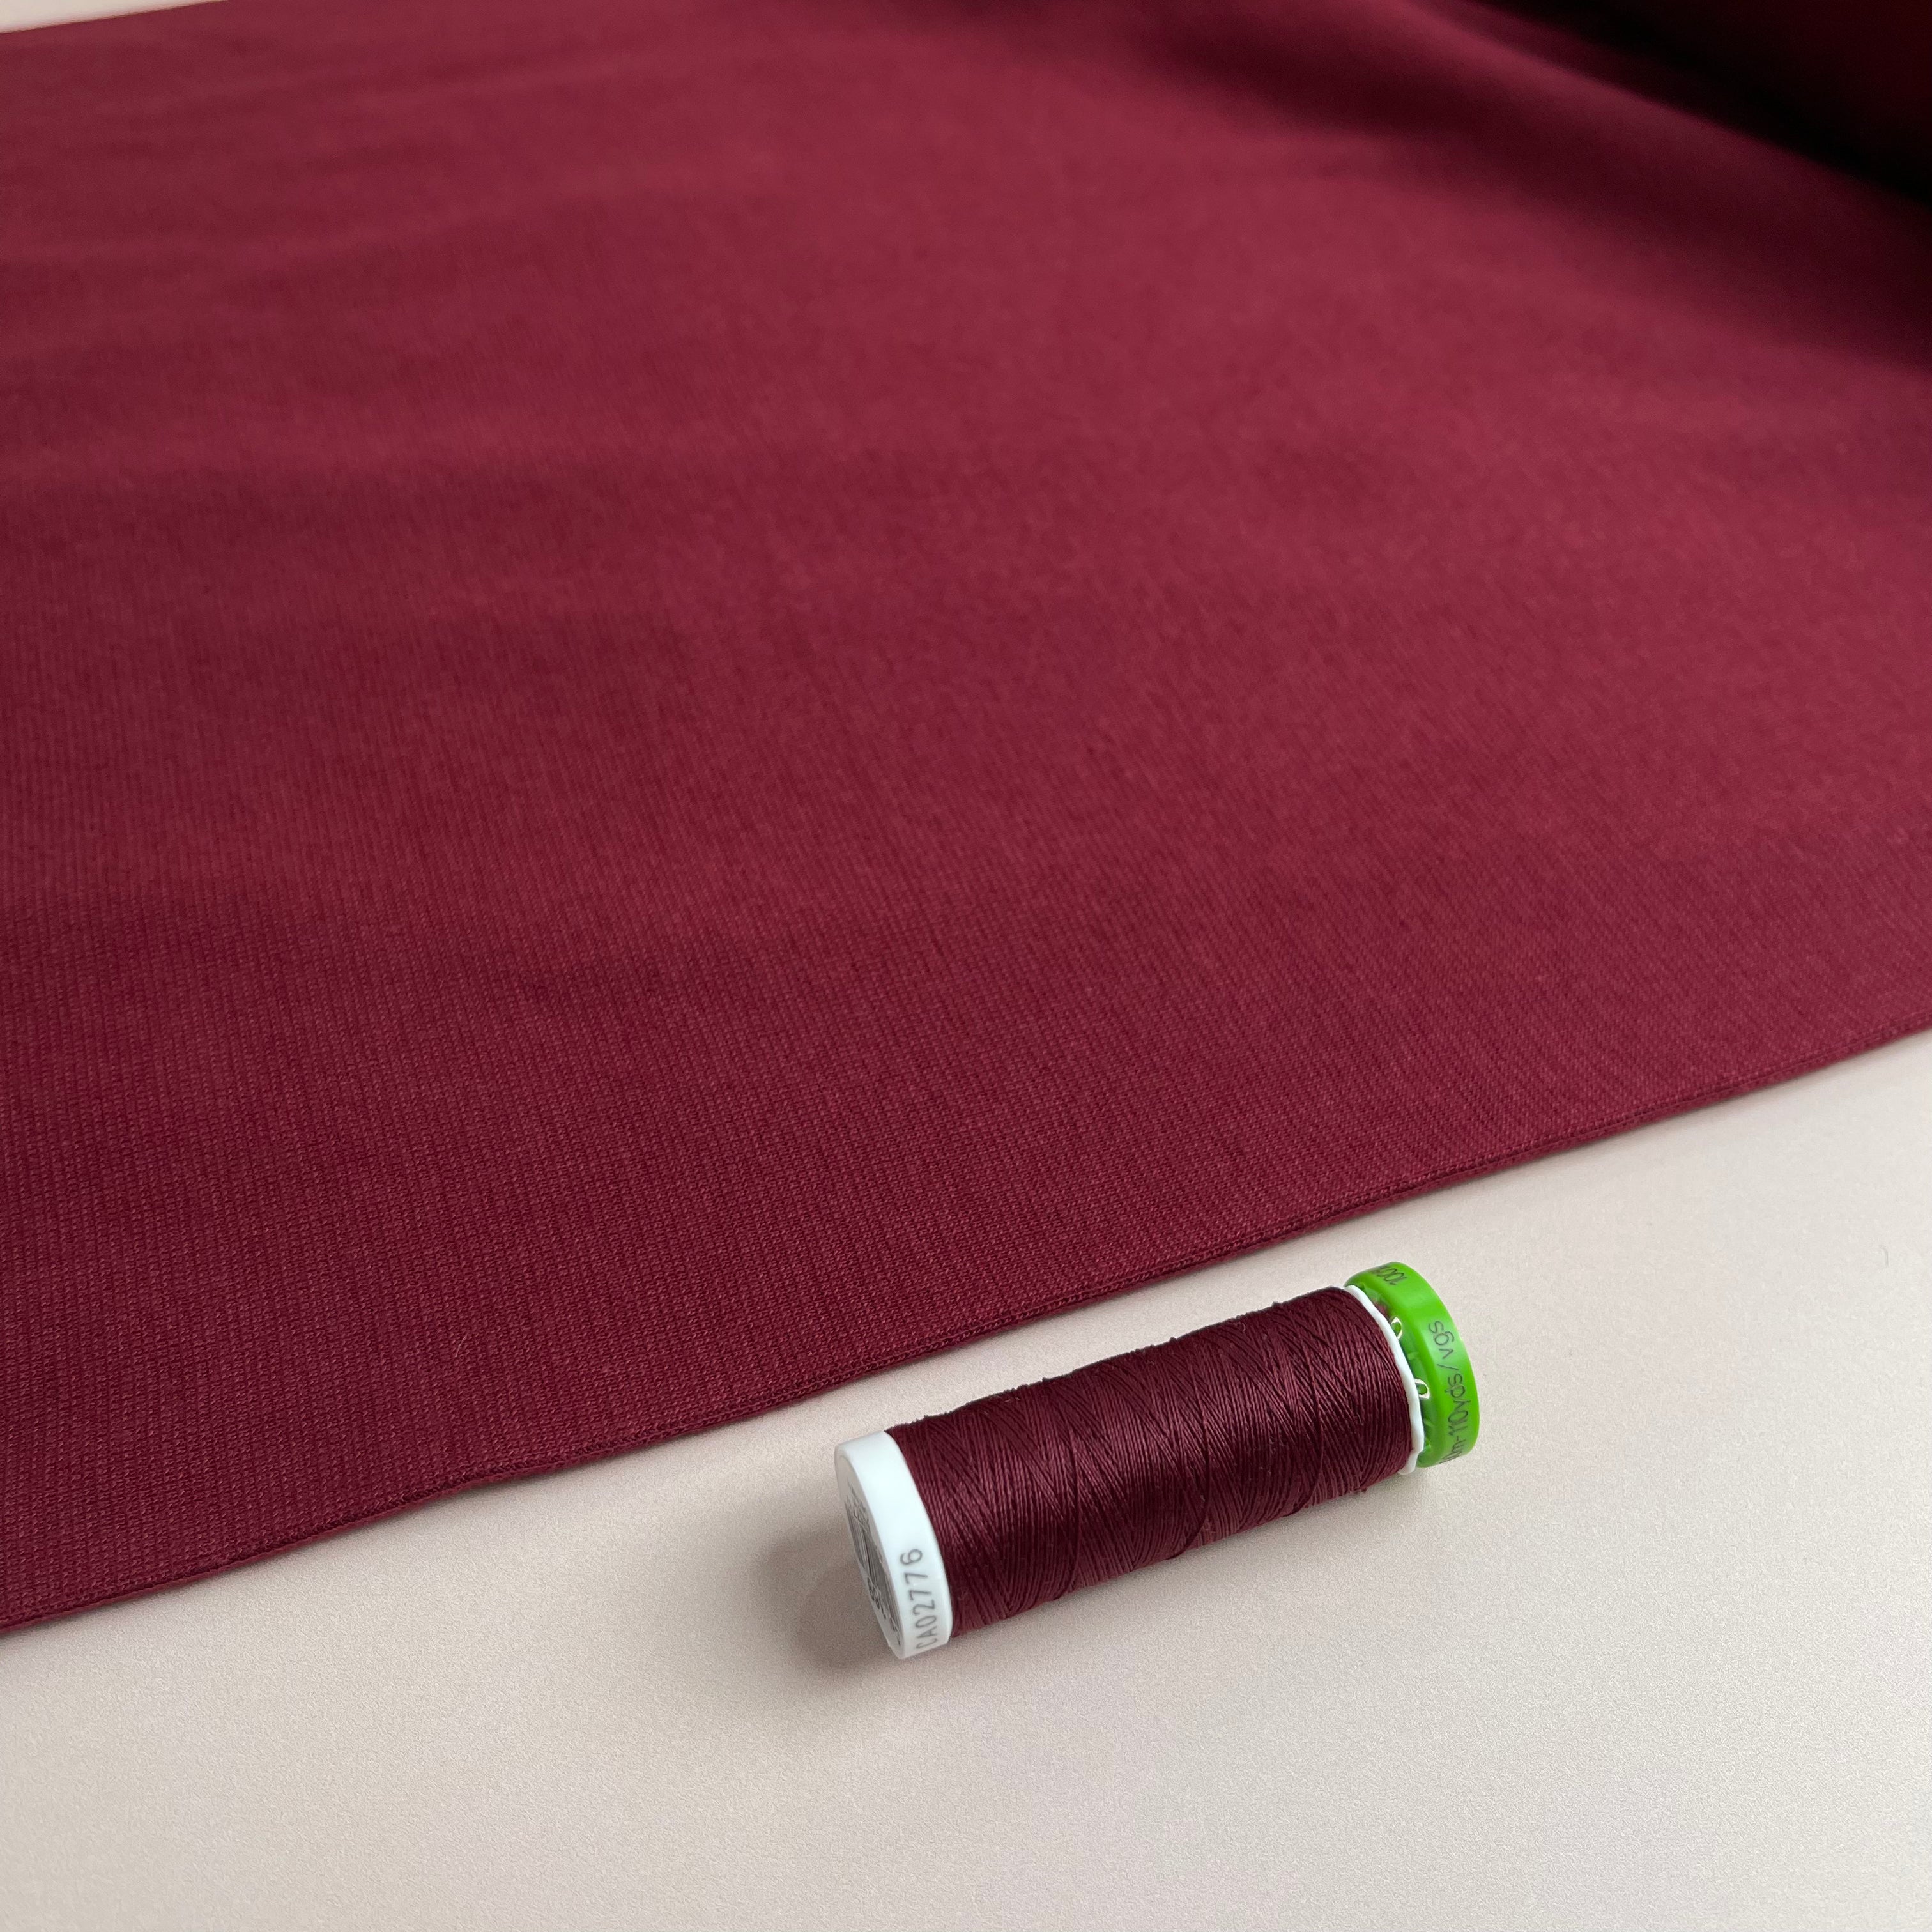 Bordeaux Tubular Cuff Ribbing Fabric